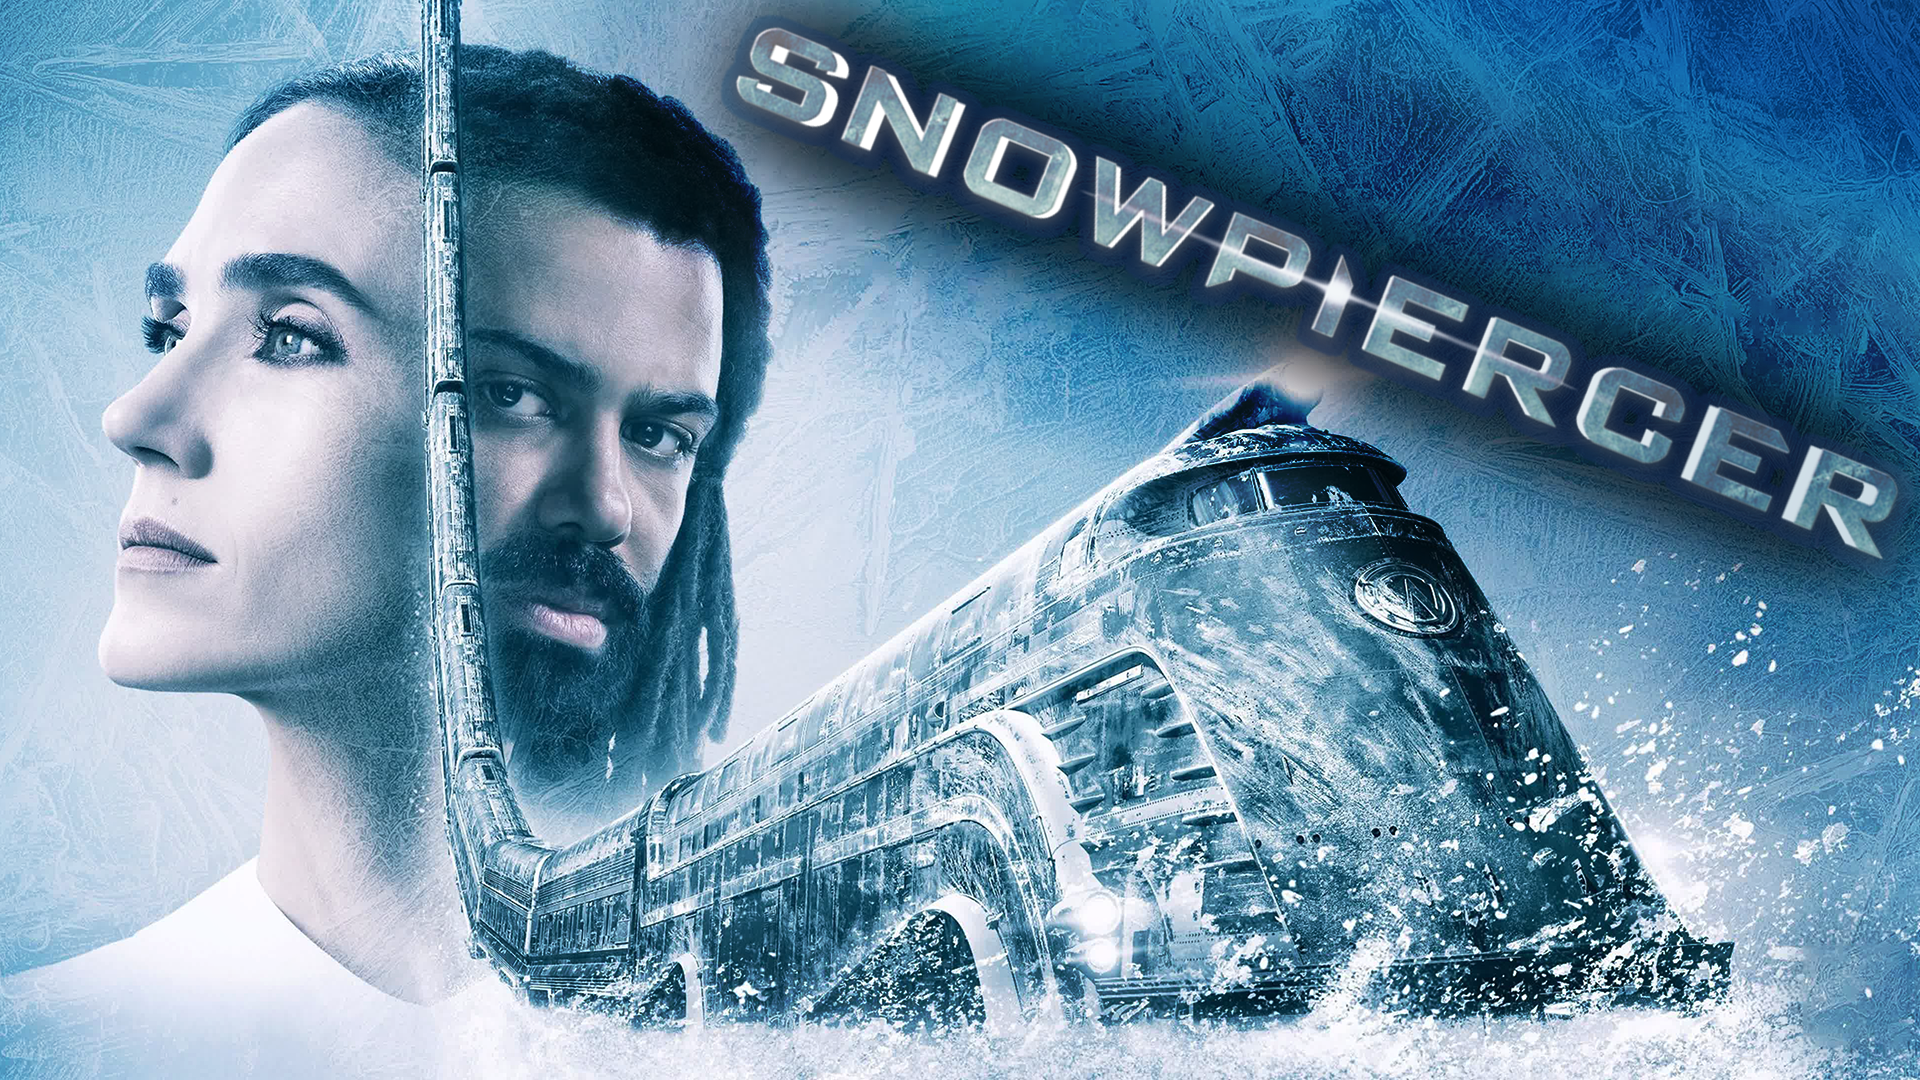 Сквозь снег – 2 сезон 7 серия / Snowpiercer